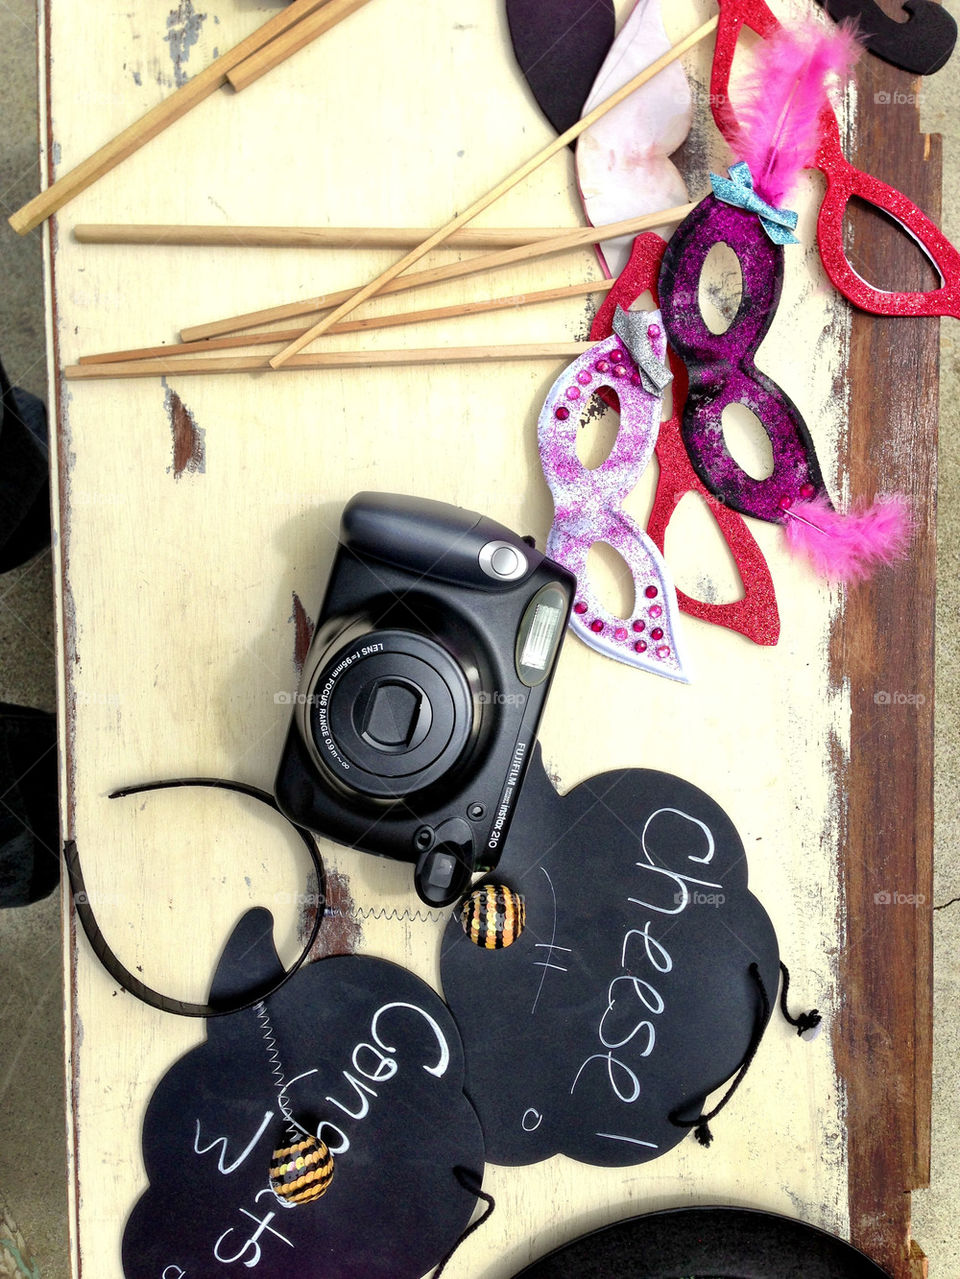 Photobooth masks and camera